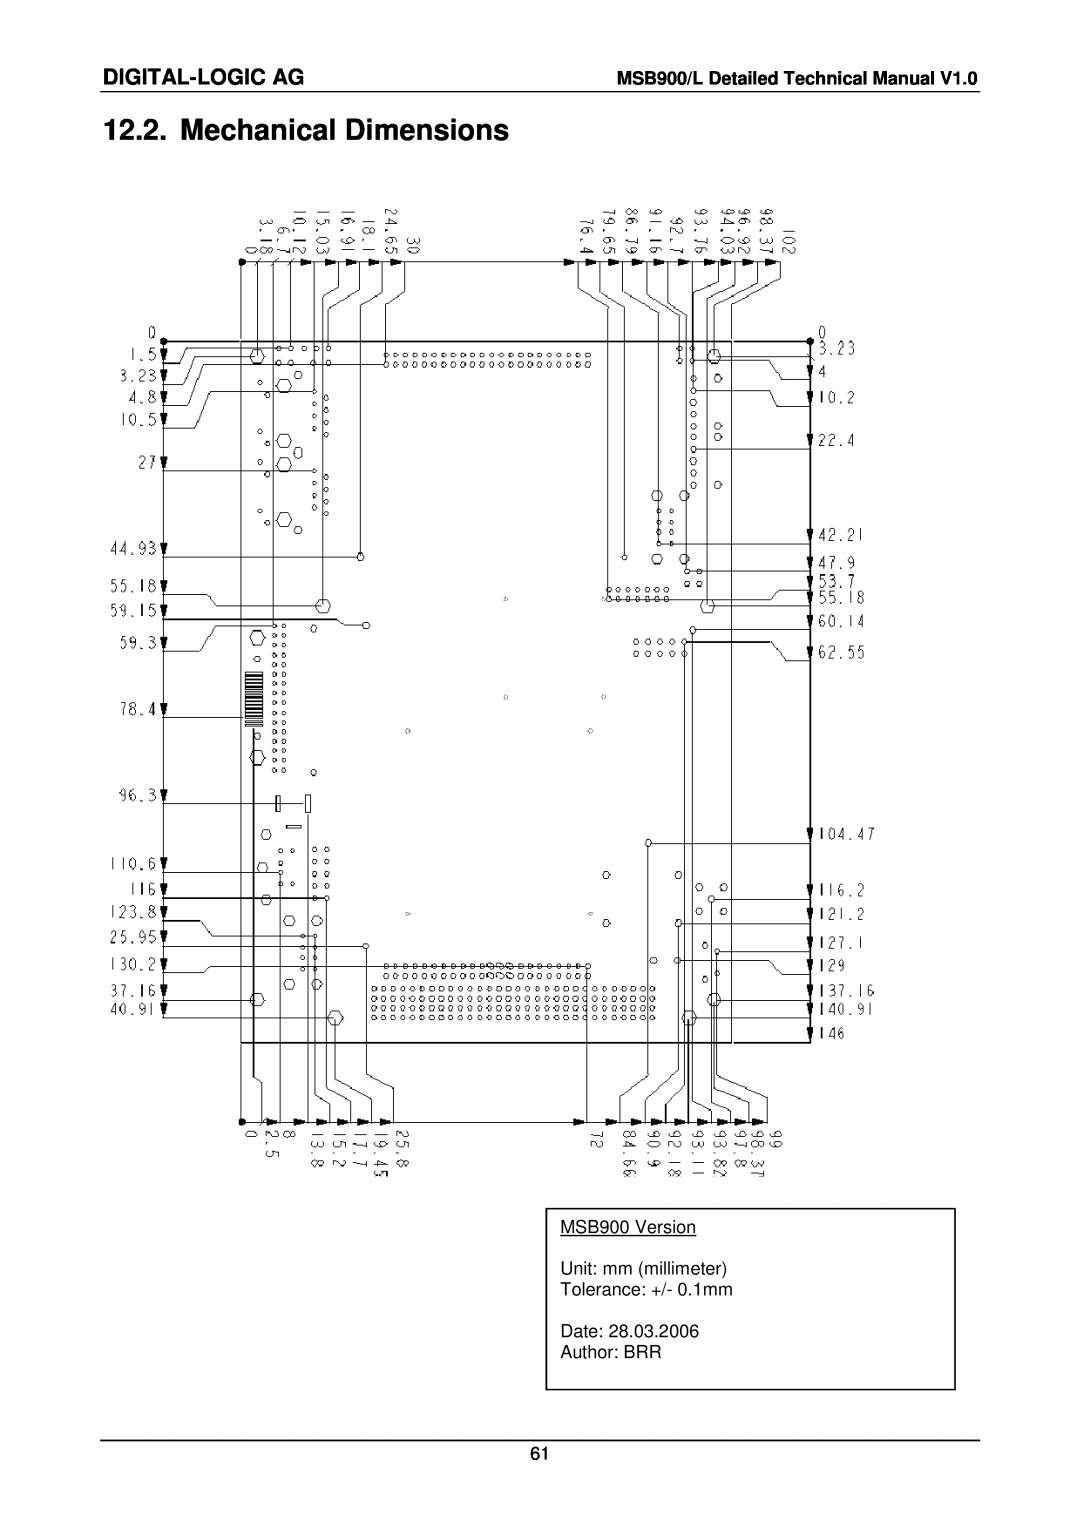 Compaq MSB900L user manual Mechanical Dimensions, Digital-Logic Ag 